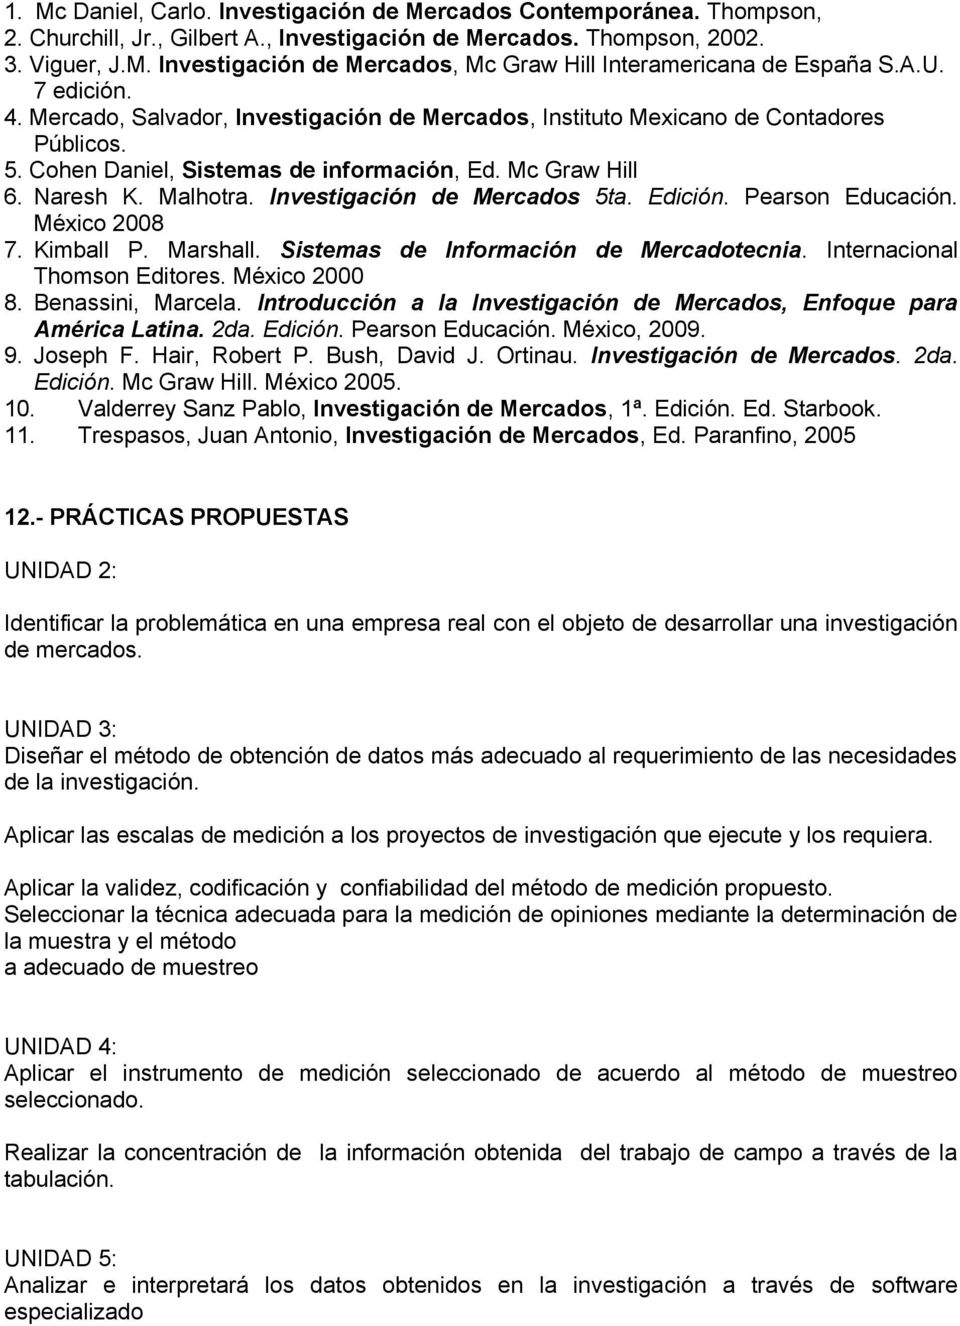 Investigación de Mercados 5ta. Edición. Pearson Educación. México 2008 7. Kimball P. Marshall. Sistemas de Información de Mercadotecnia. Internacional Thomson Editores. México 2000 8.